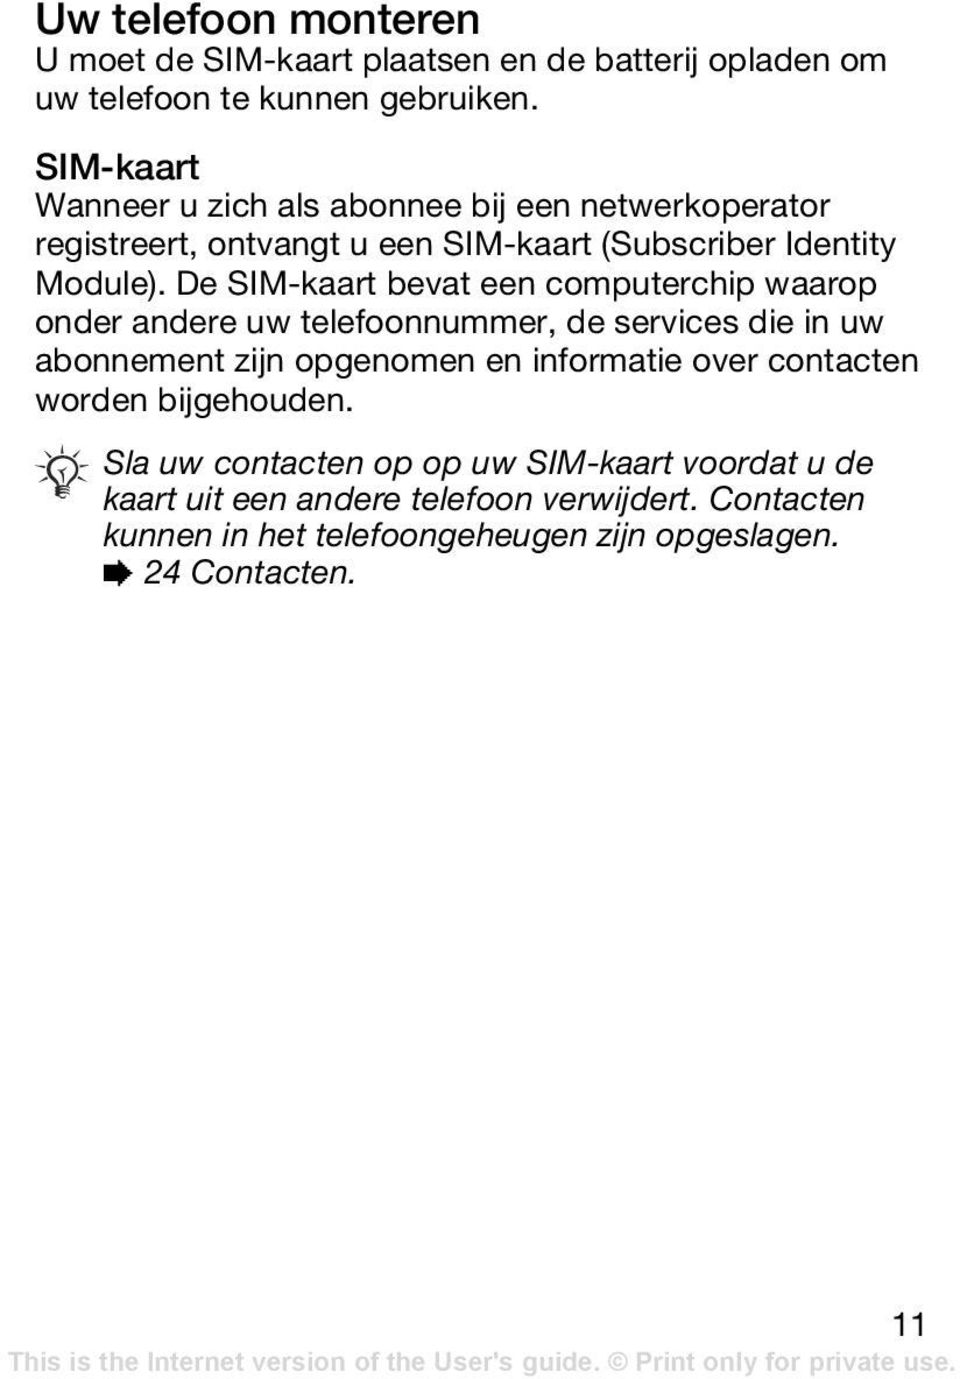 De SIM-kaart bevat een computerchip waarop onder andere uw telefoonnummer, de services die in uw abonnement zijn opgenomen en informatie over